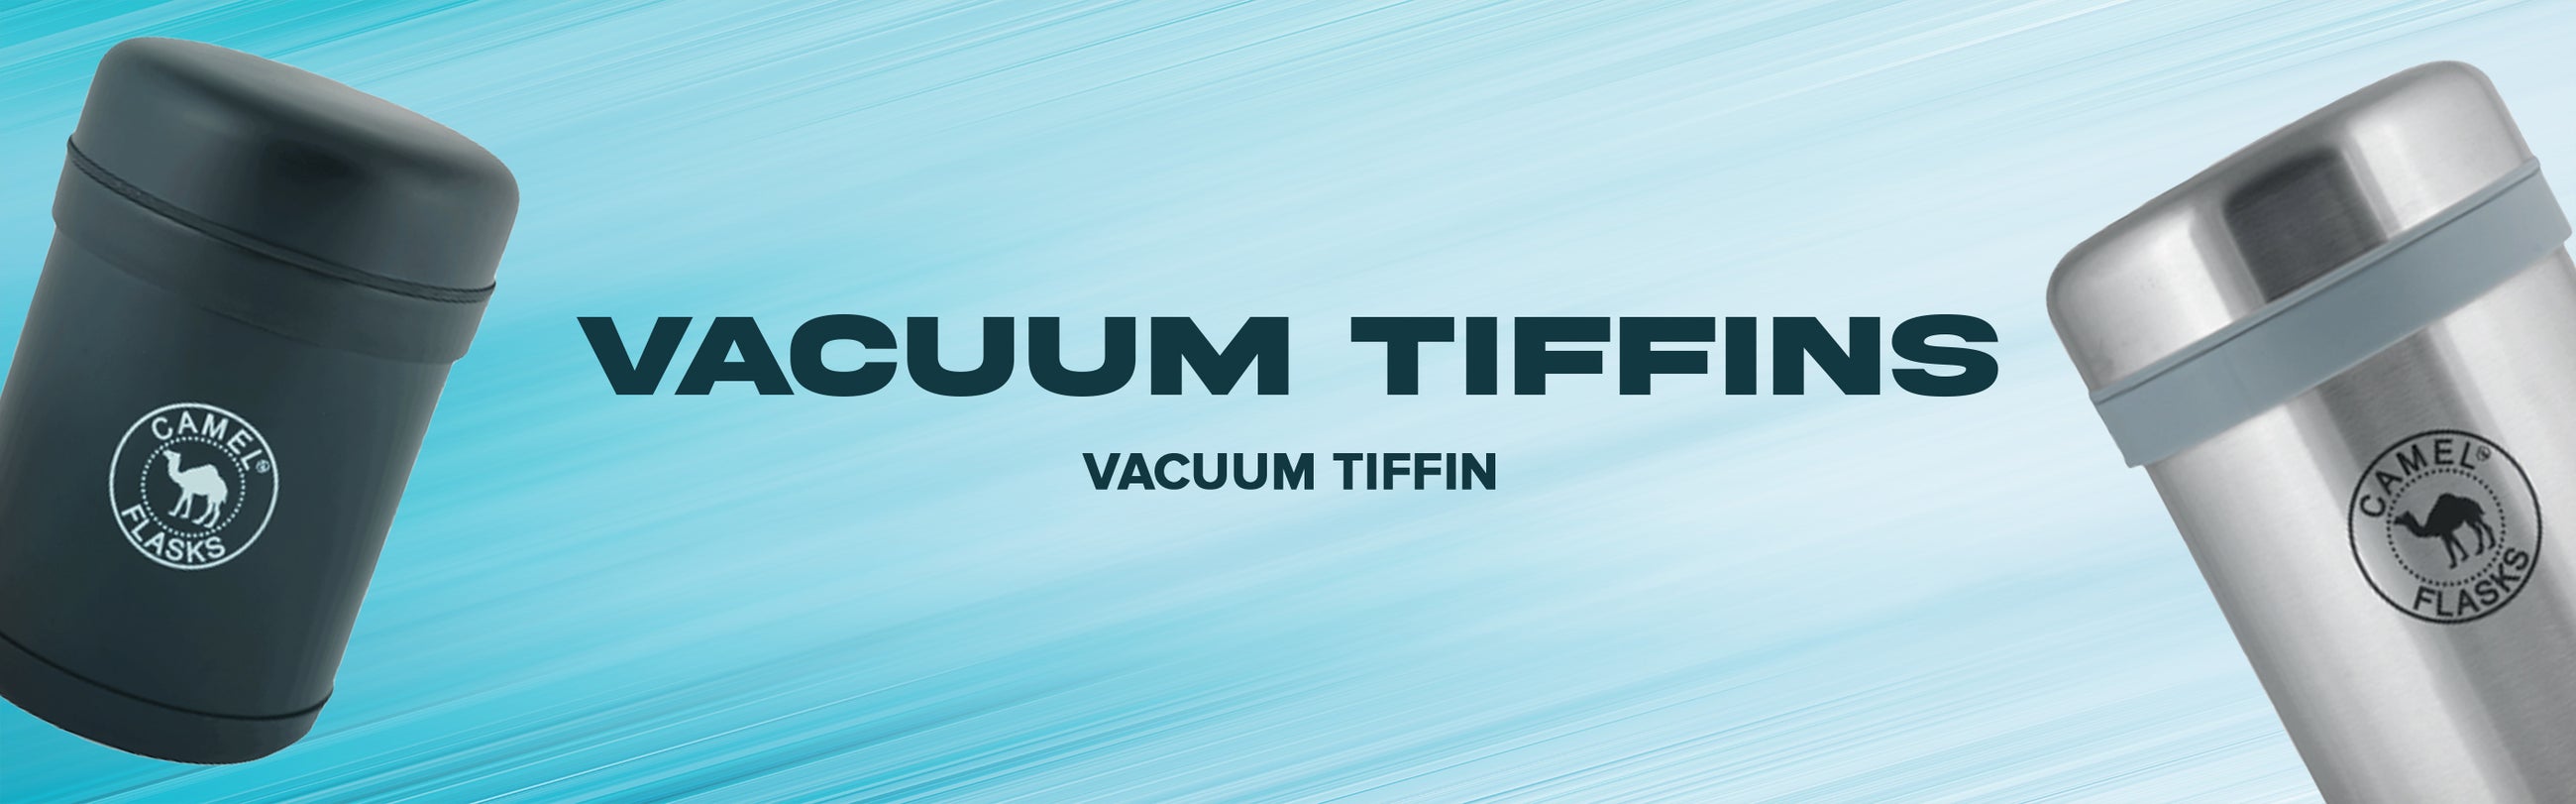 VACUUM TIFFIN COLLECTION